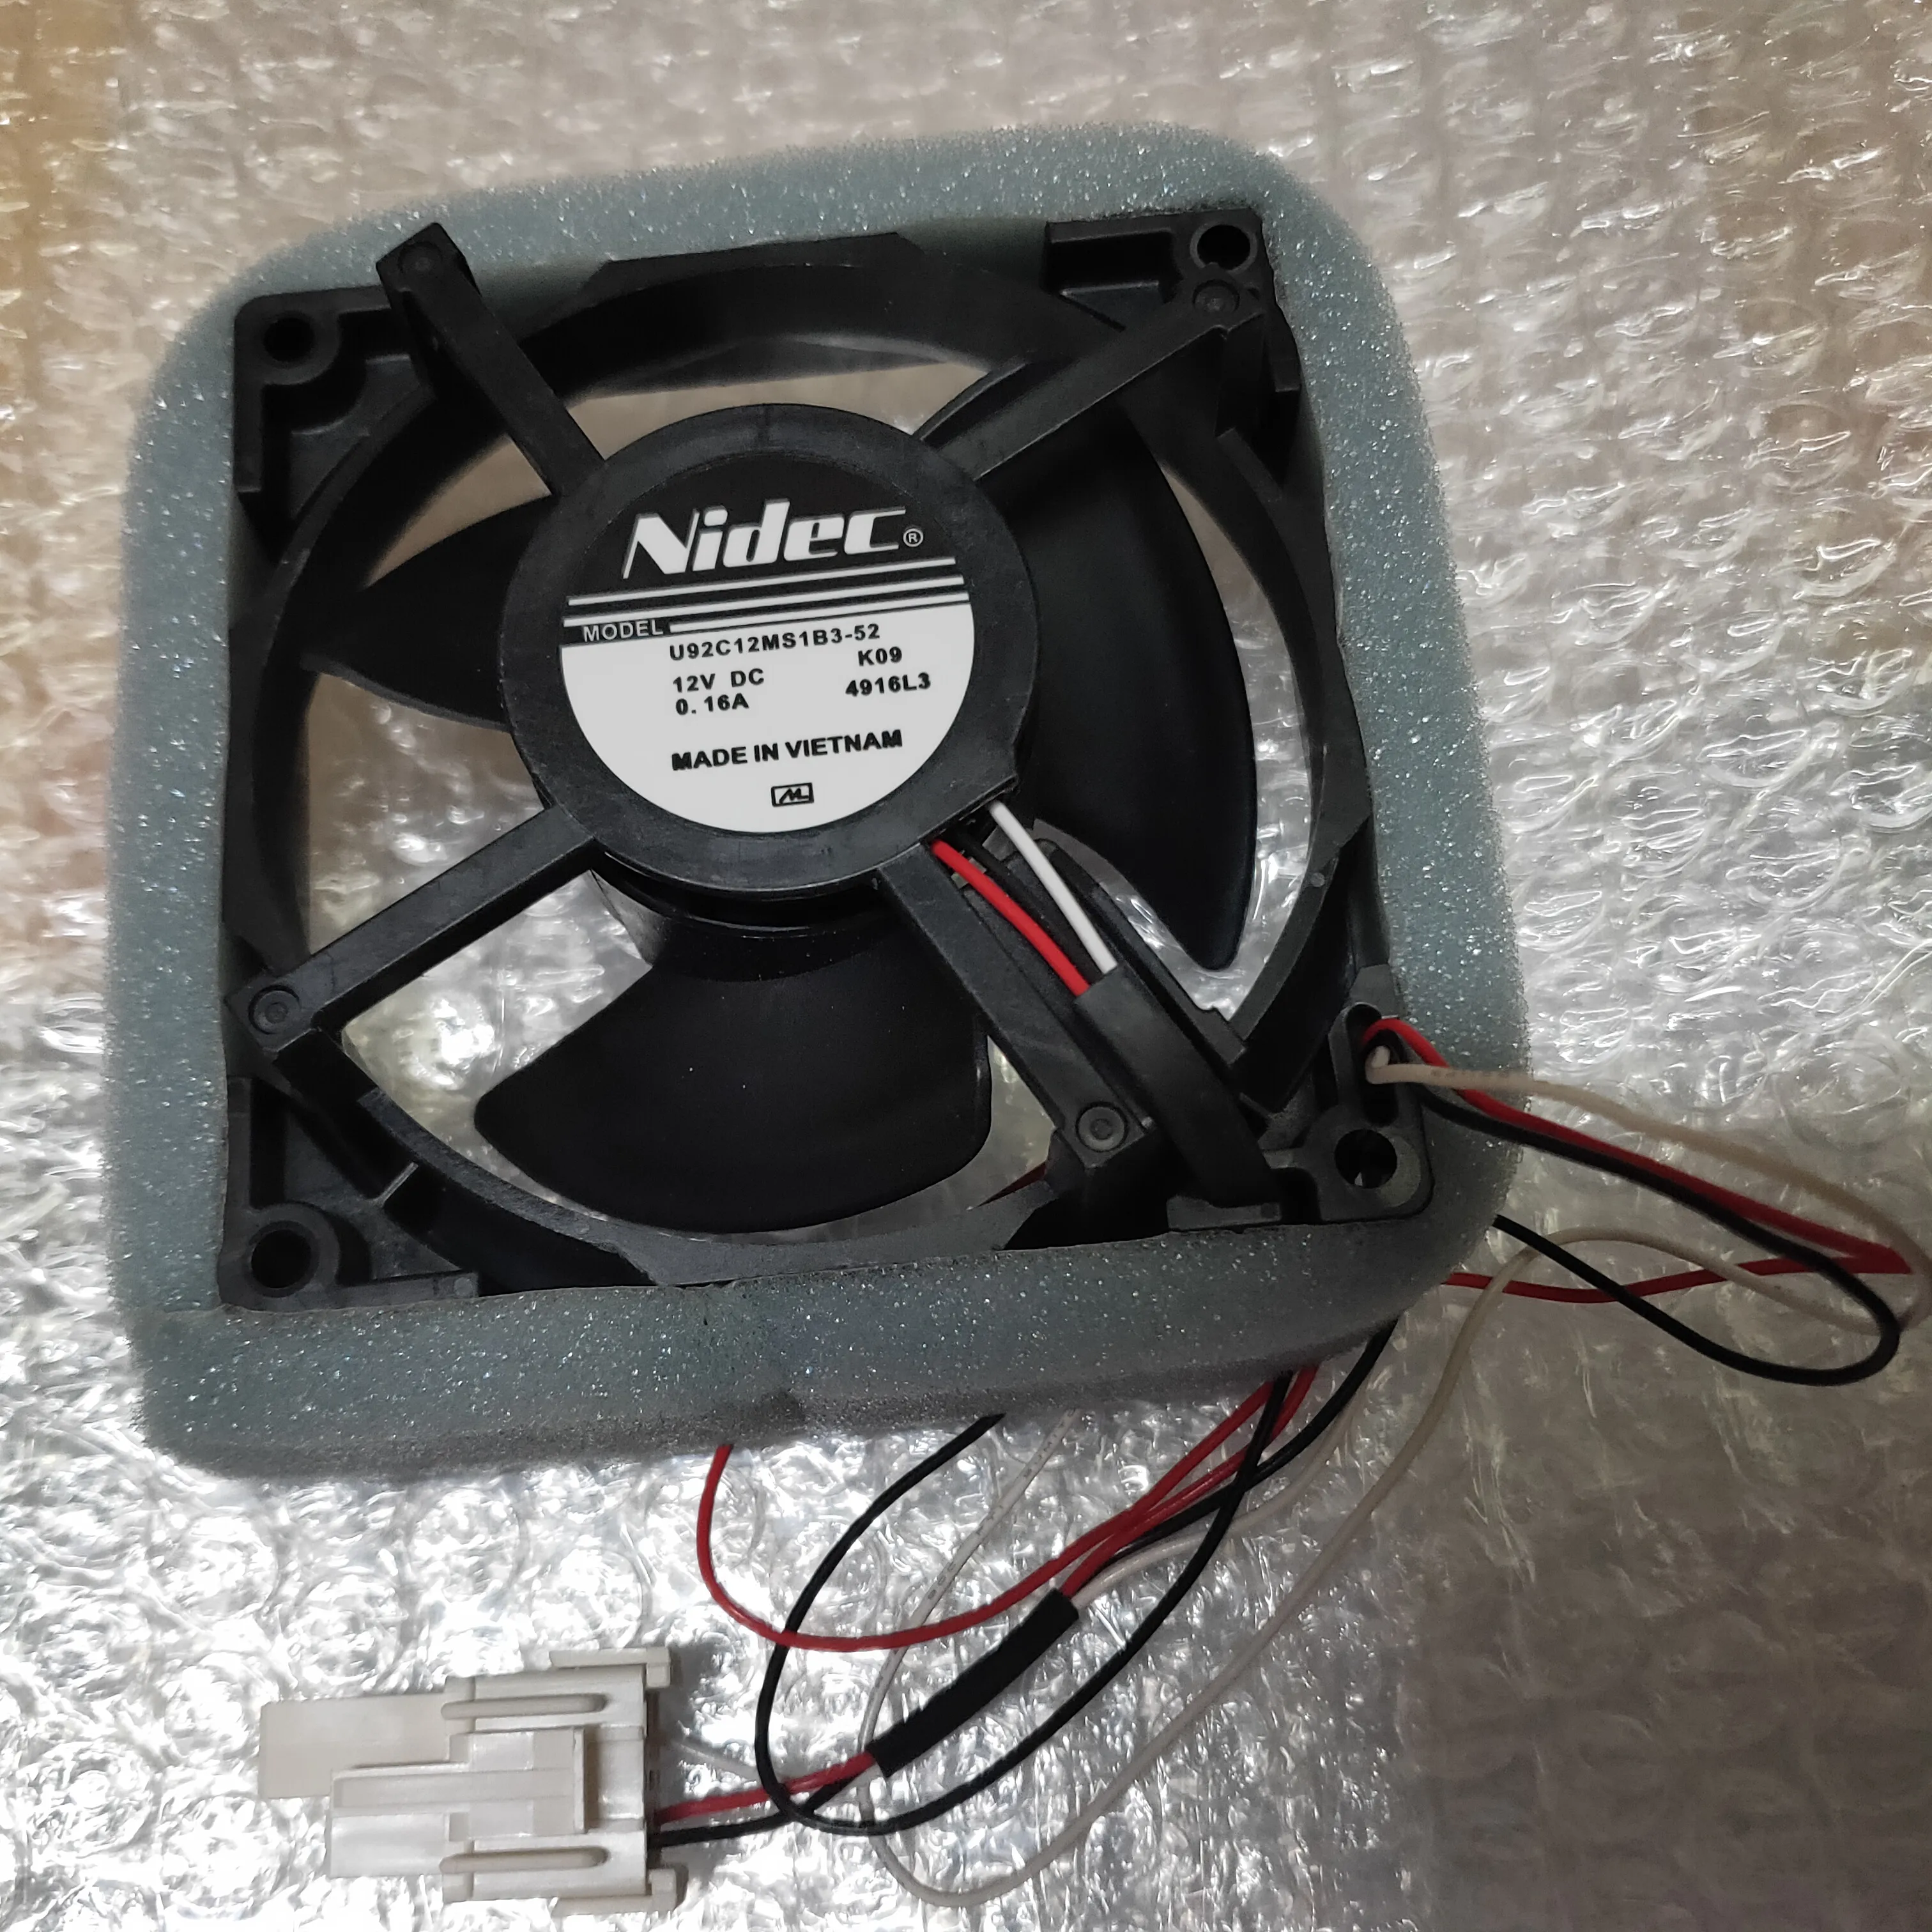 Free de frete grátis Ventilador de resfriamento refrigerado Novo original para NIDEC 9cm U92C12MS1B3-52 12V 0,16A Cooler à prova d'água